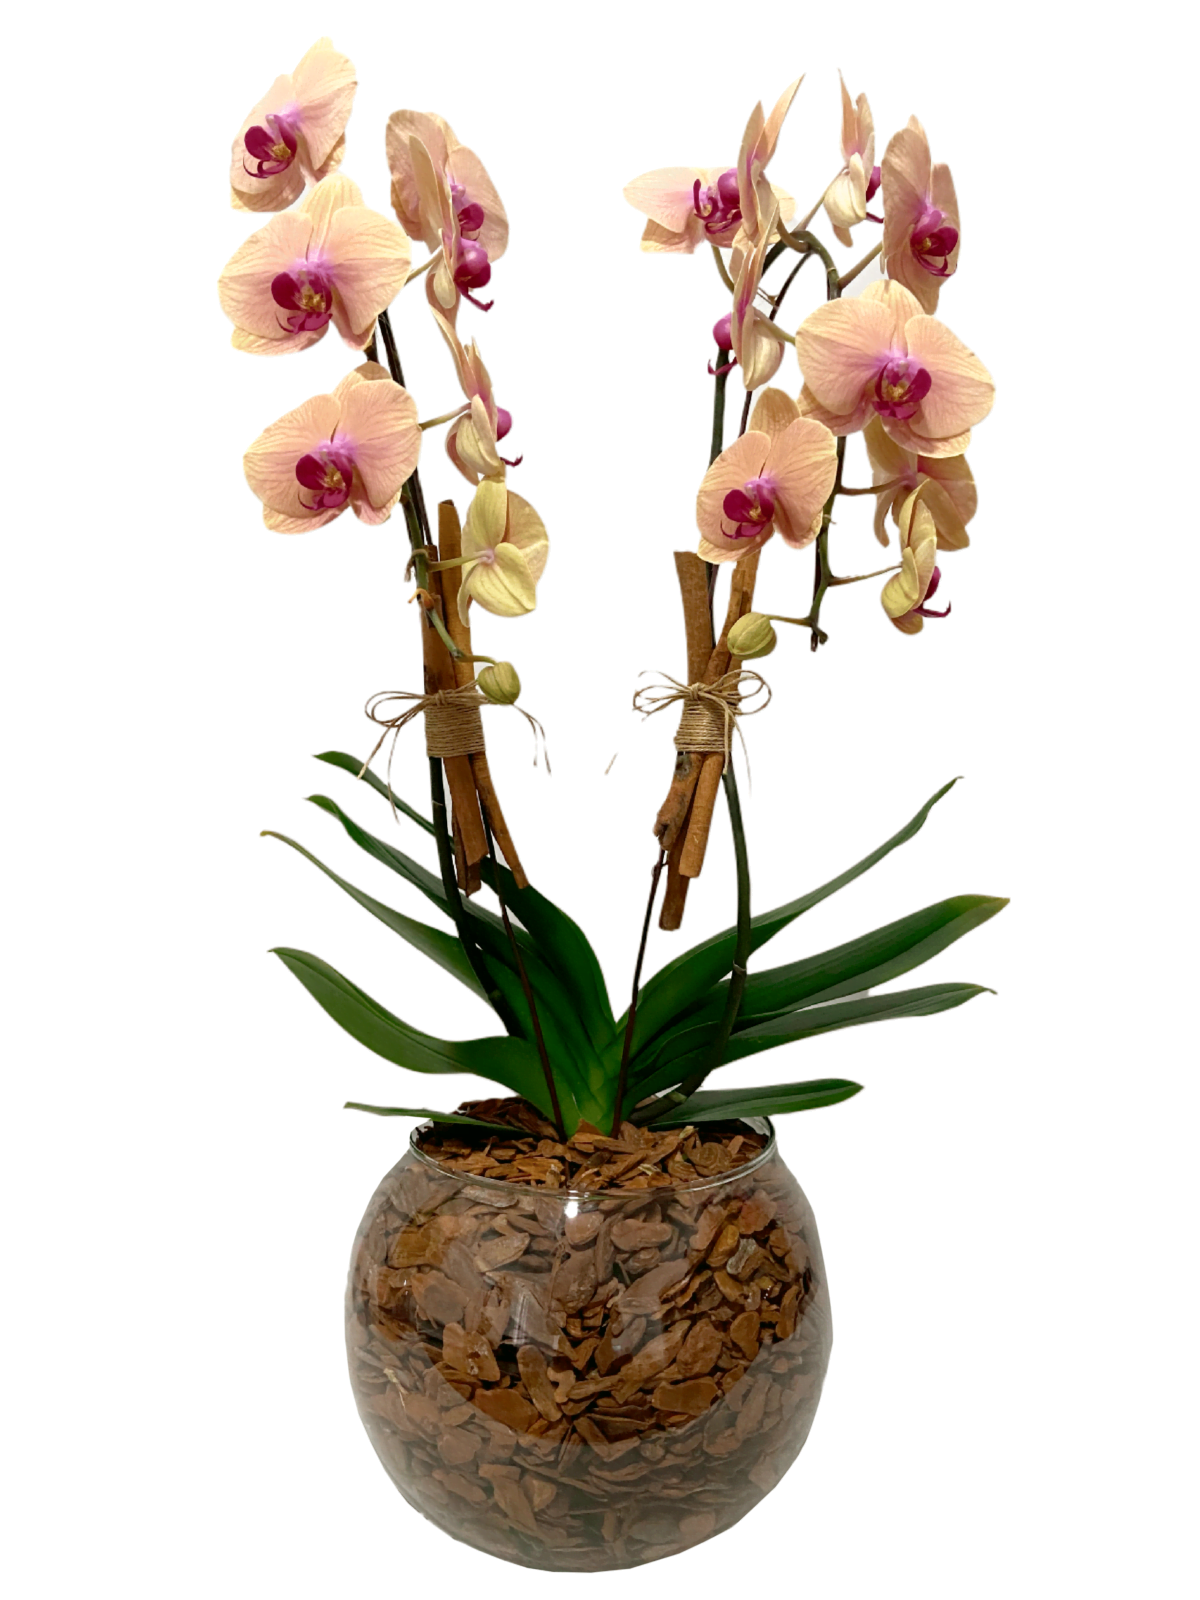 floricultura moinhos de vento melhor floricultura arranjo de orquideas